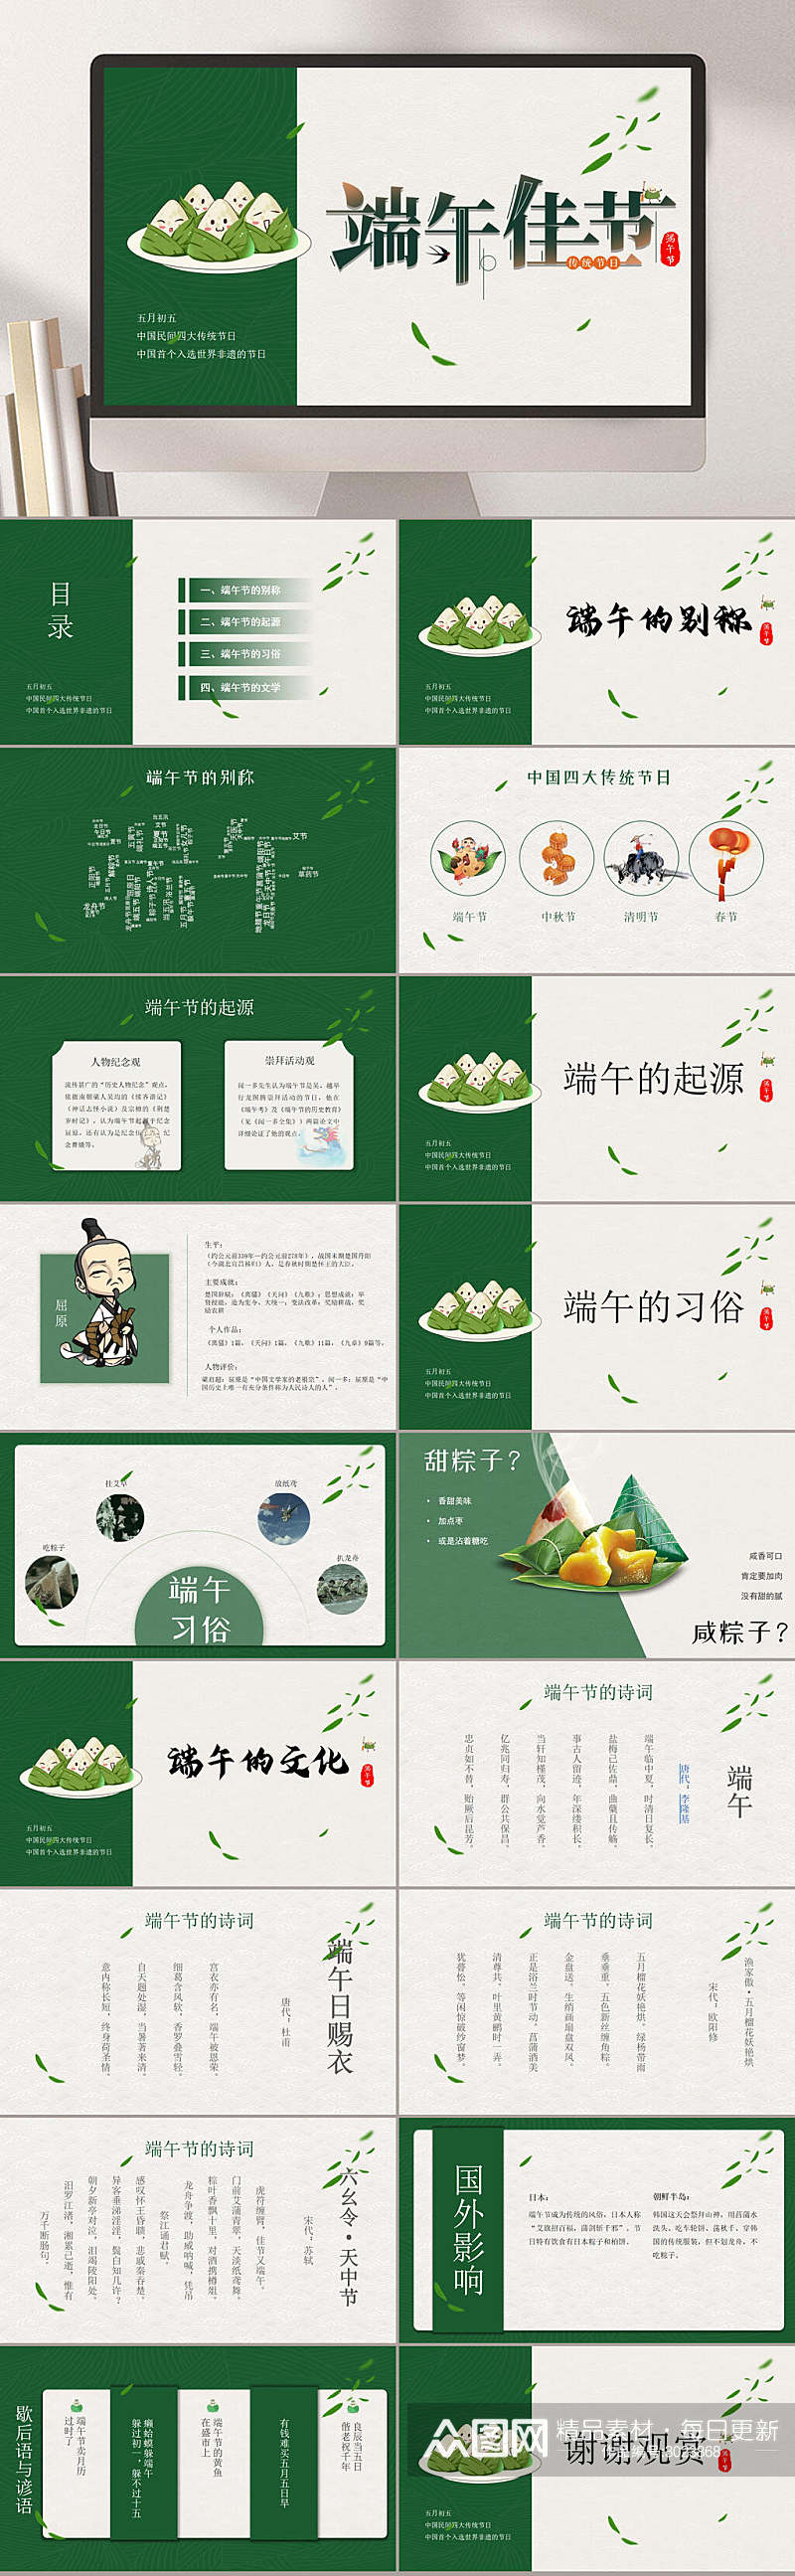 端午节粽子绿色主题背景节日PPT素材